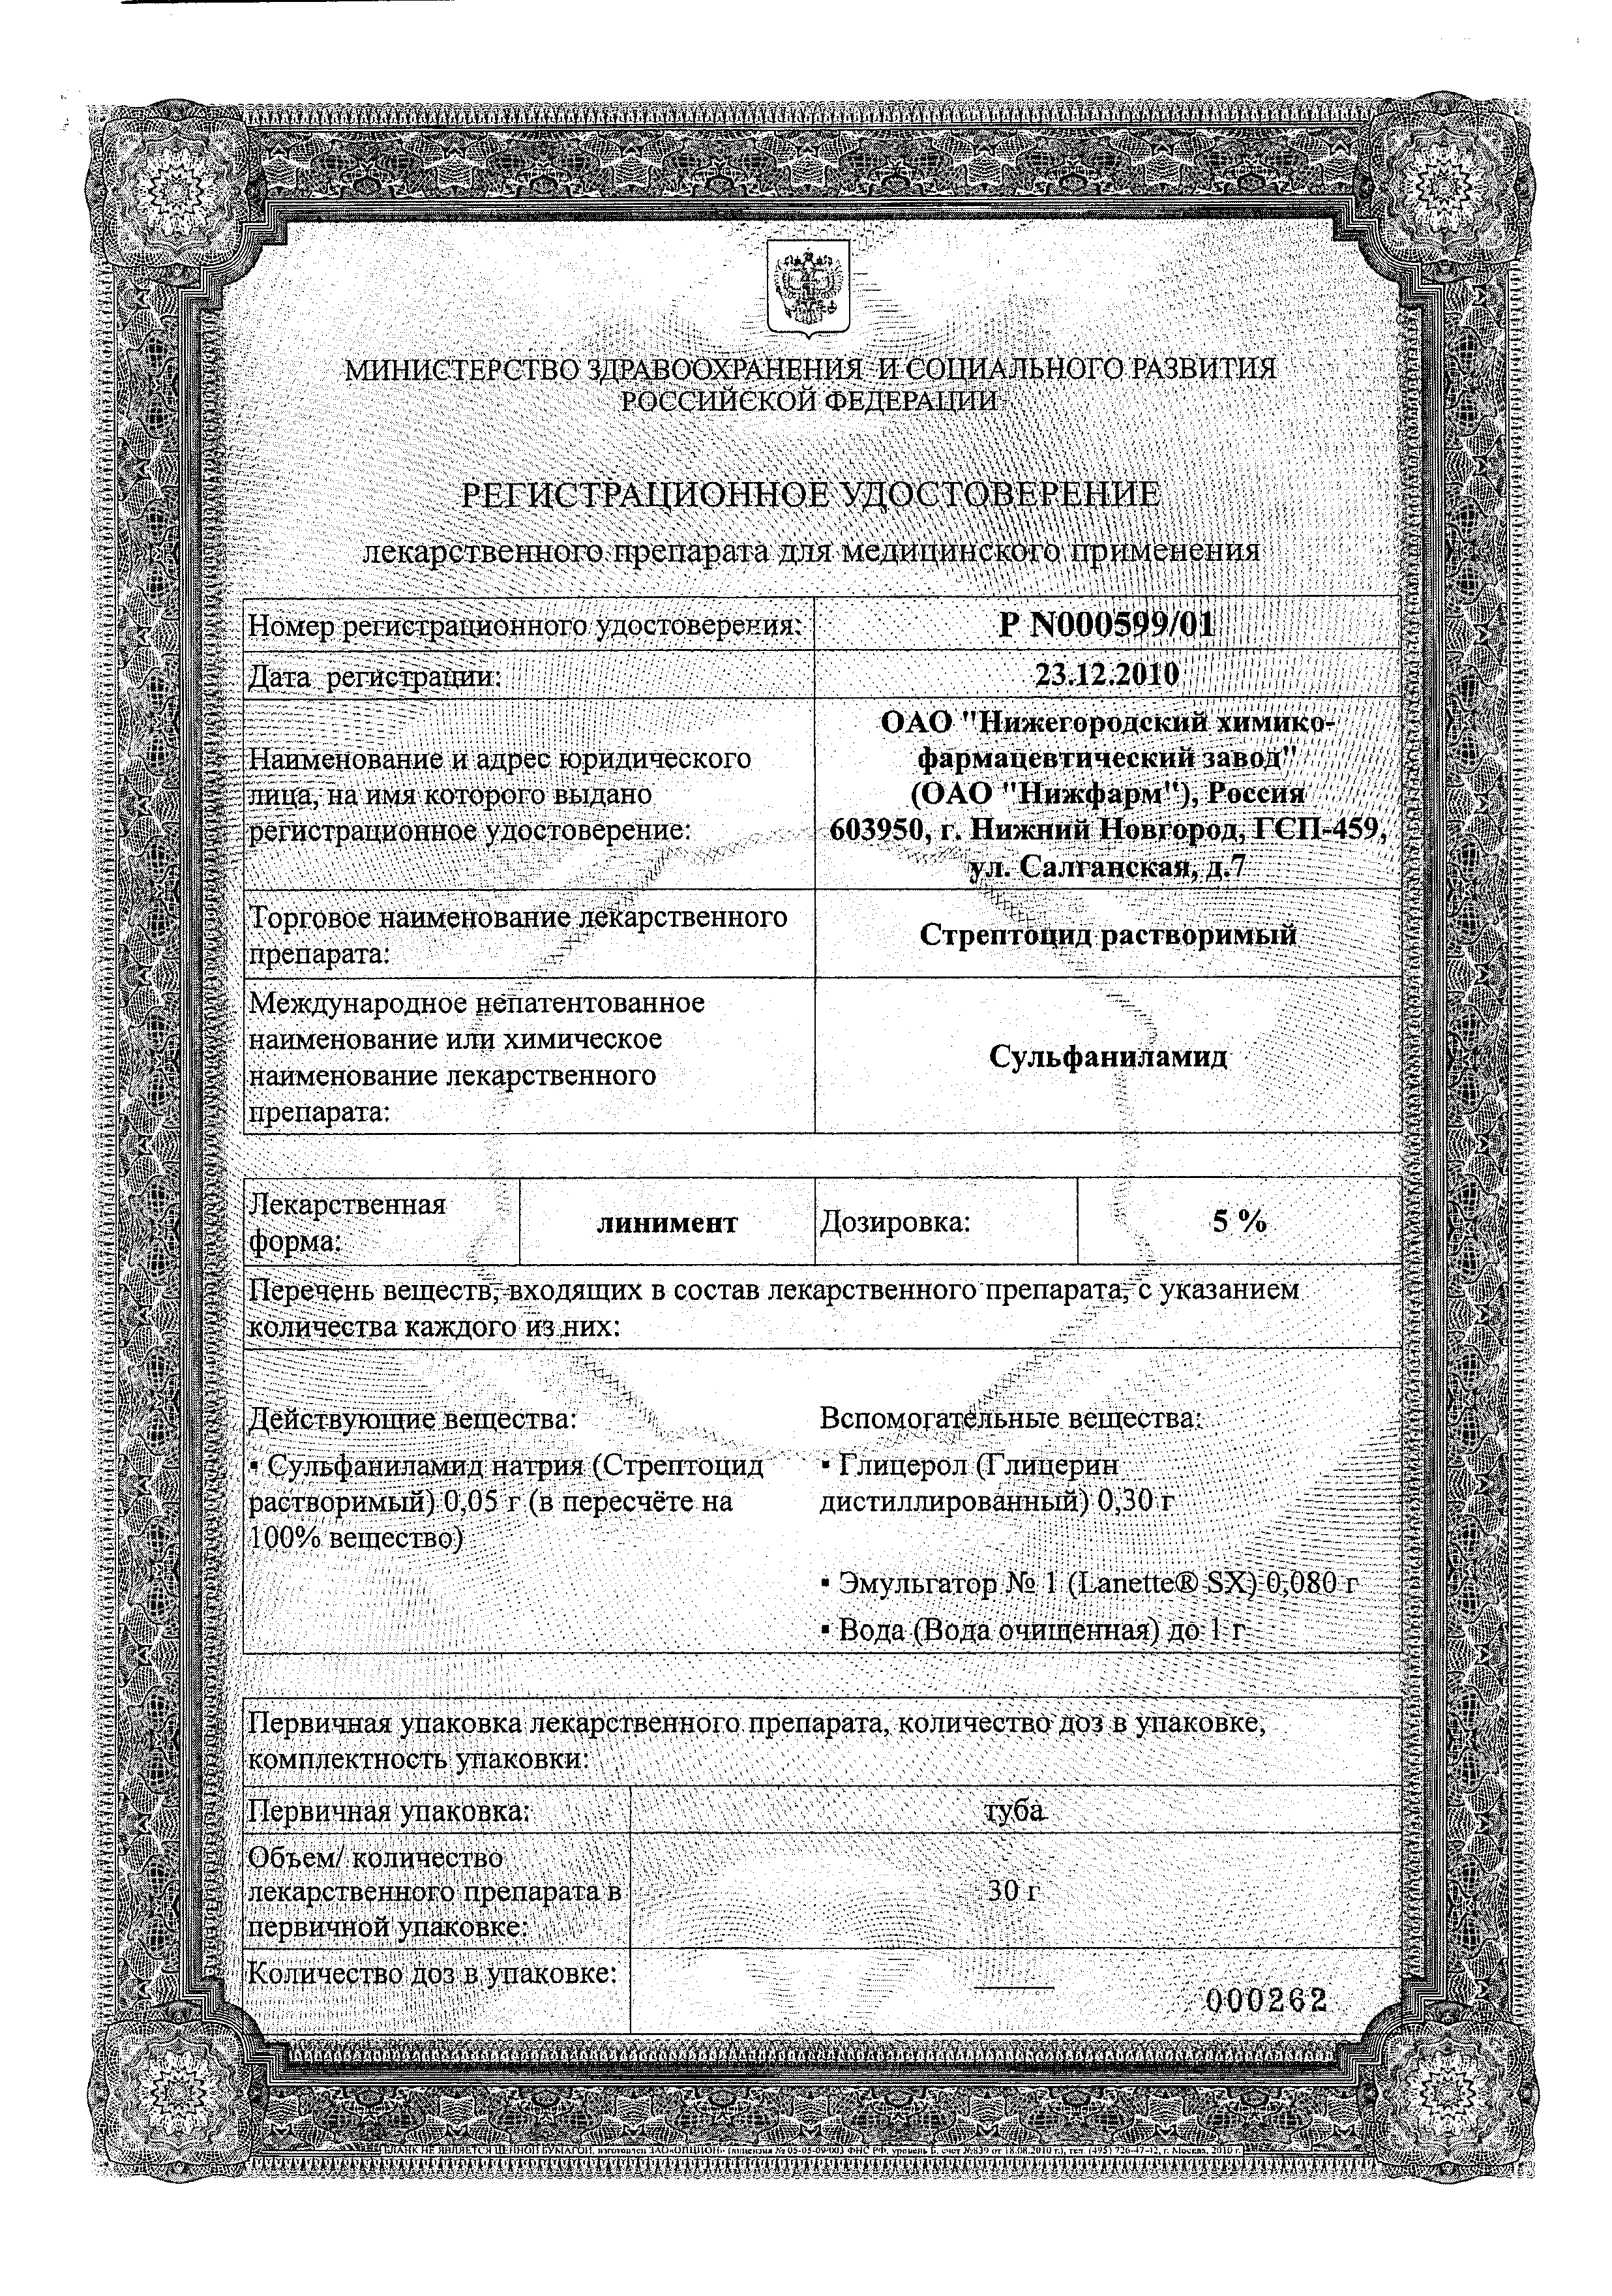 Стрептоцид растворимый сертификат